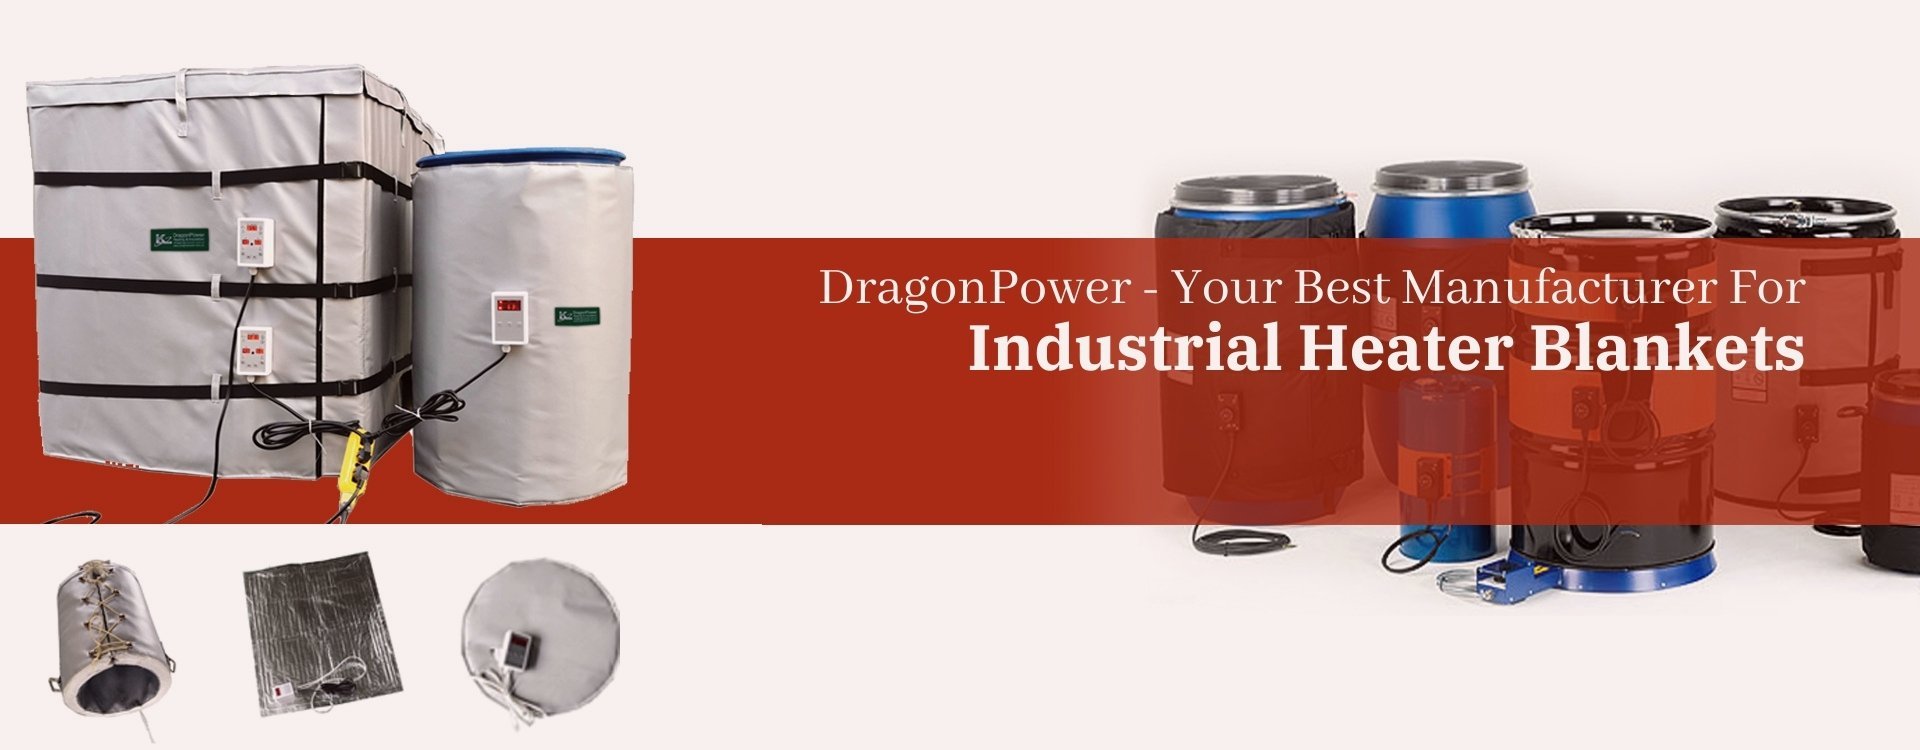 DragonPower drum heater blanket manufactruer (2)